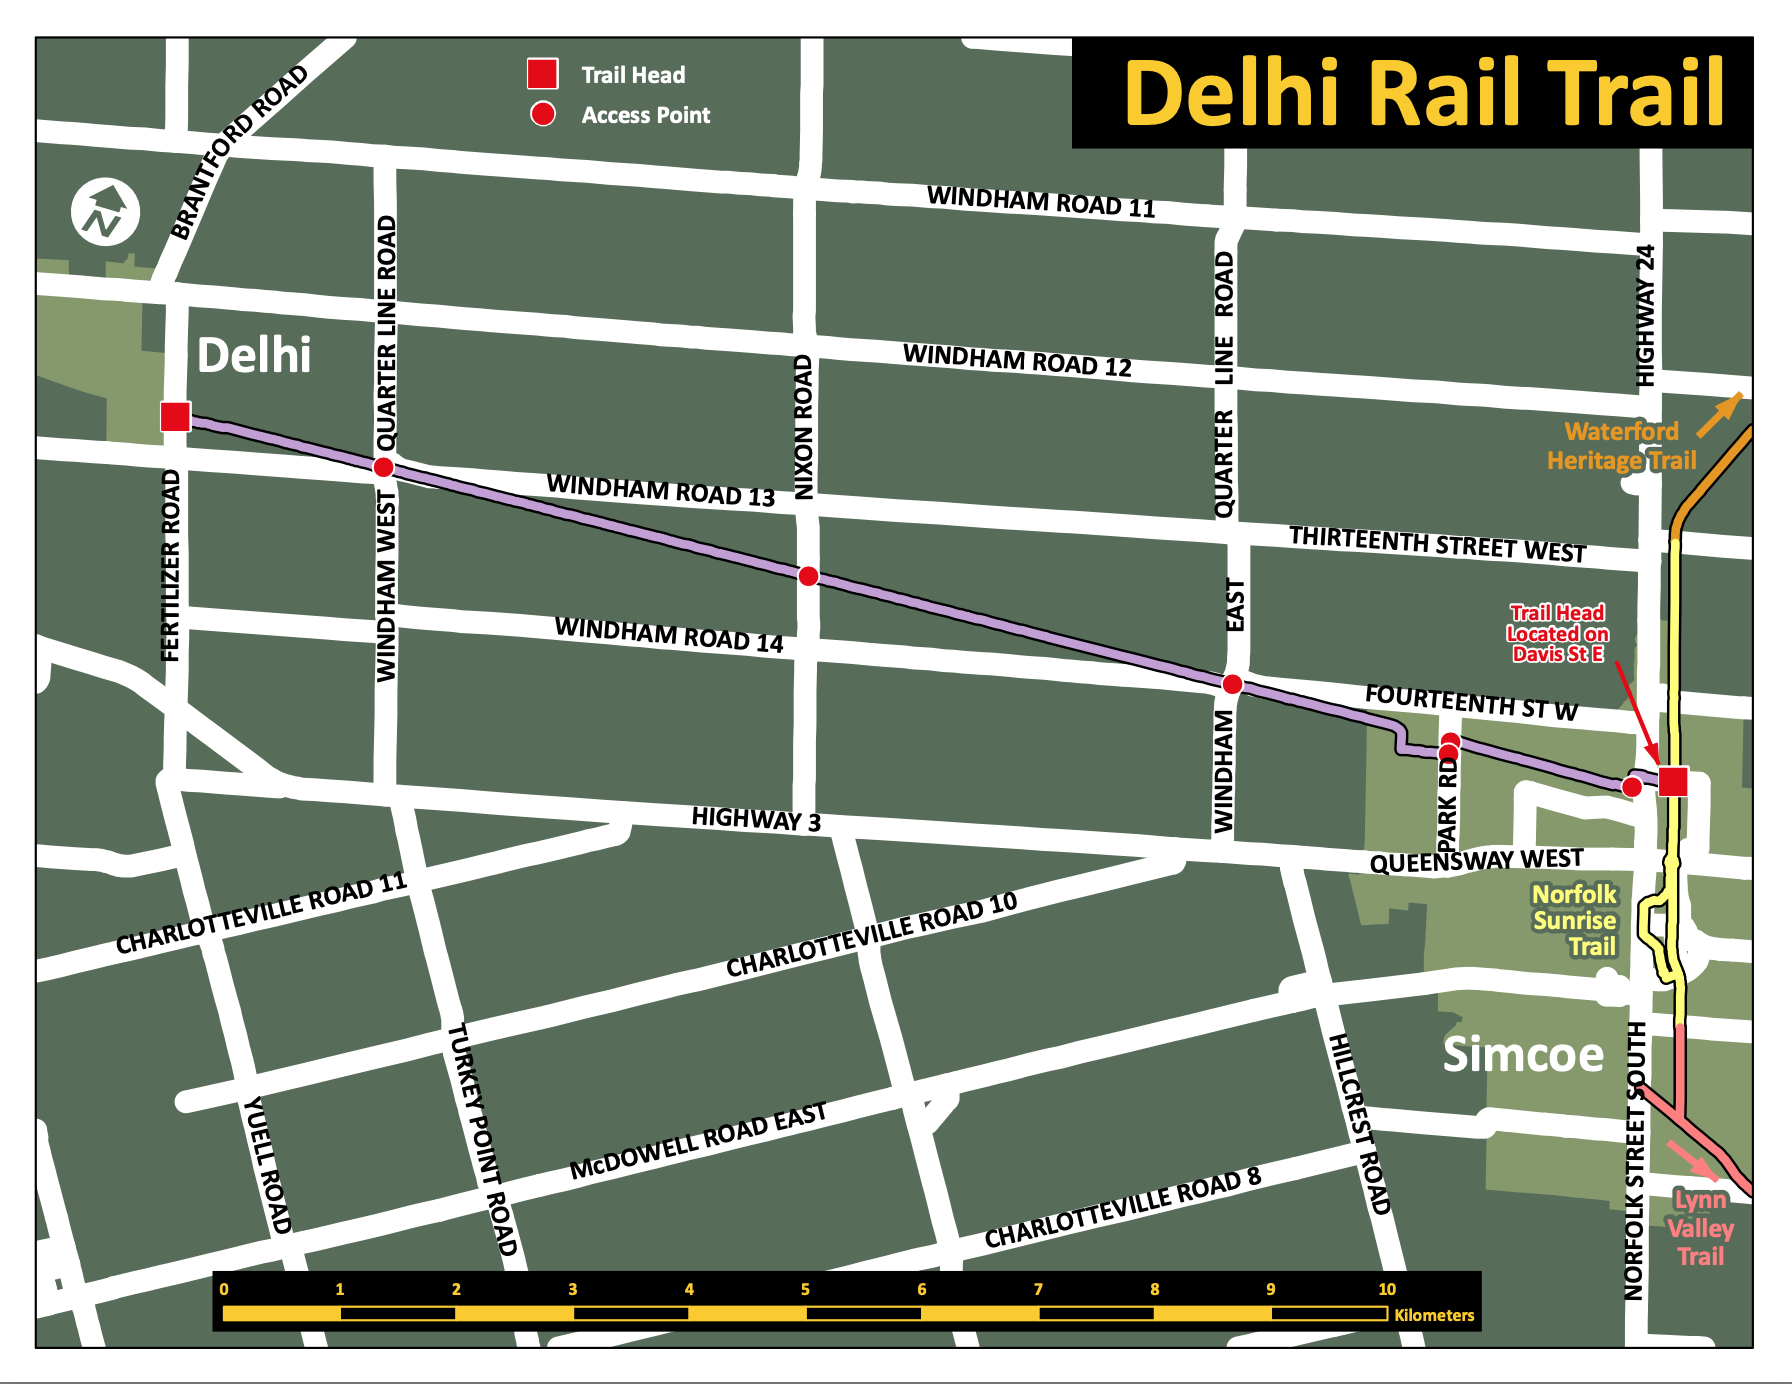 Delhi Rail Trail